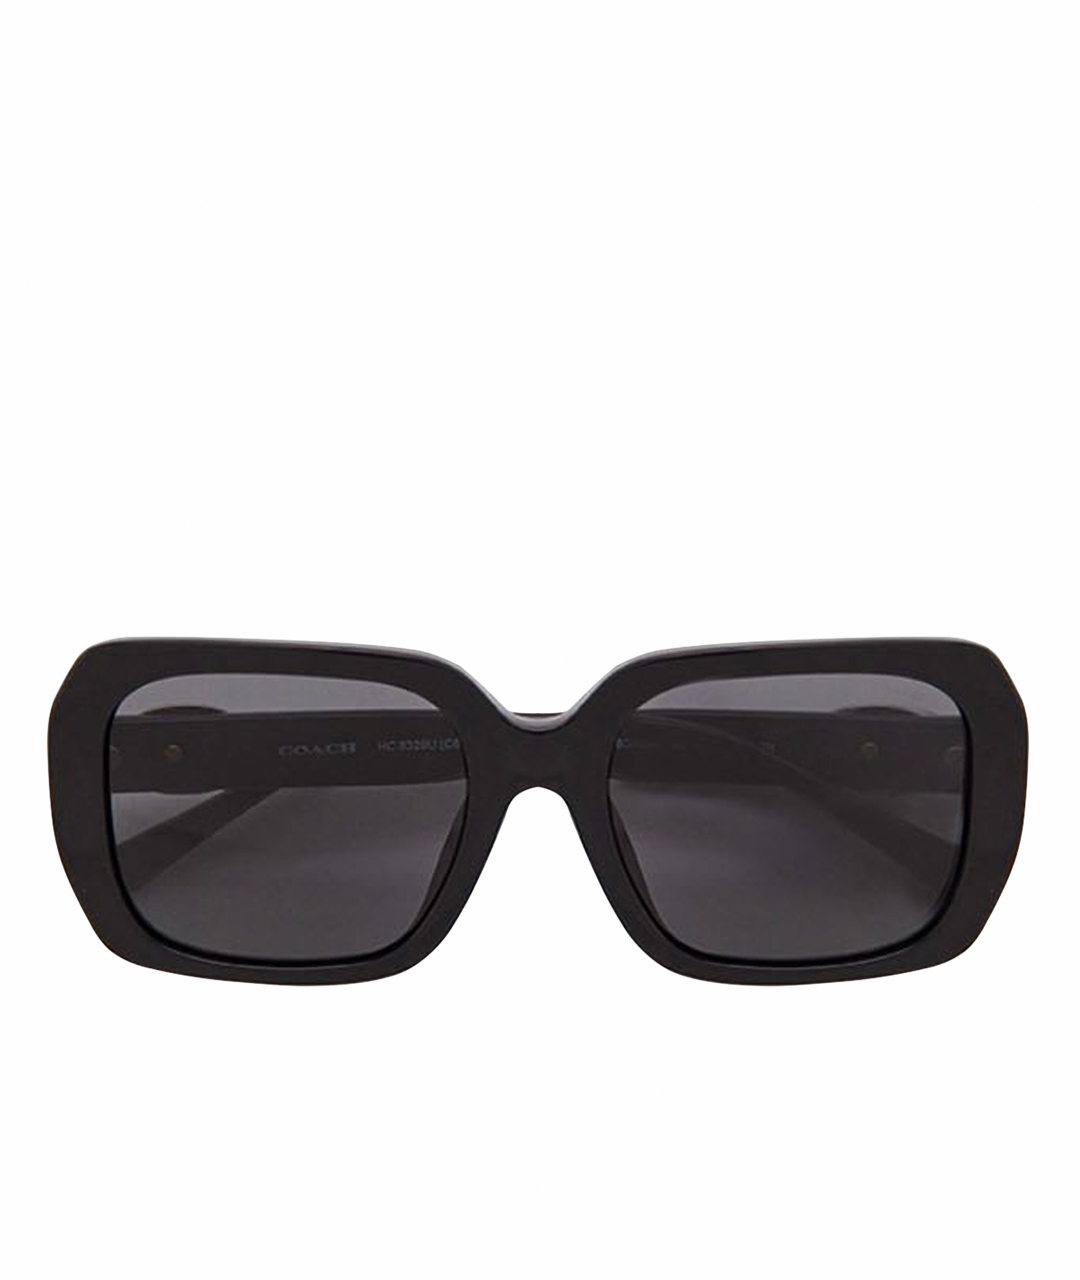 COACH Черные солнцезащитные очки, фото 1